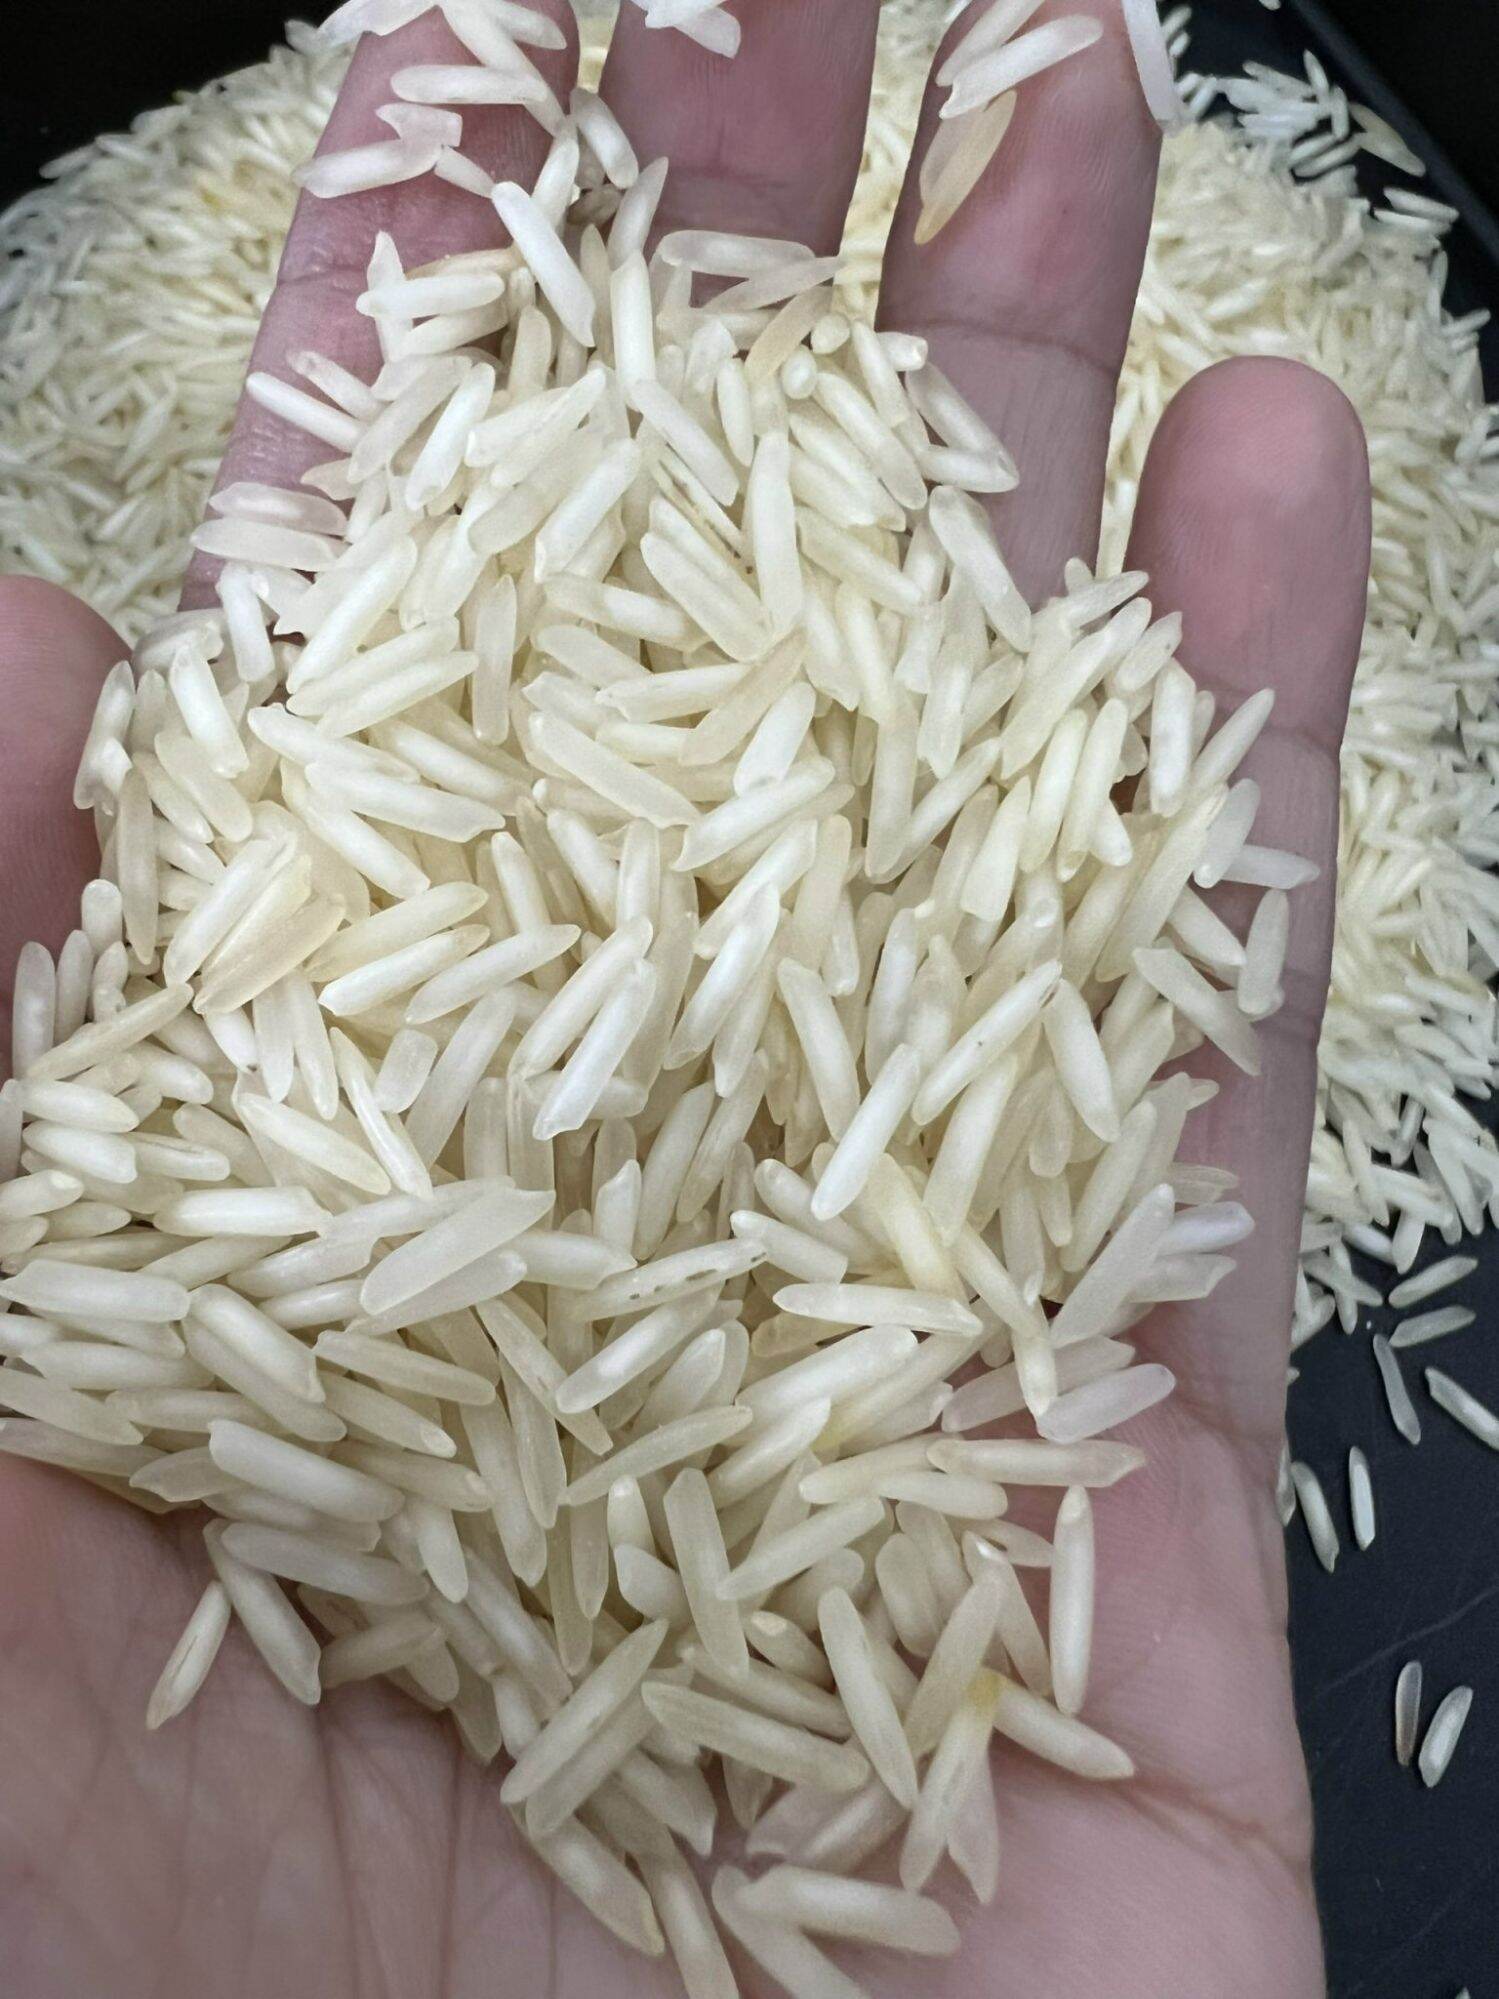 Gạo basmati - gạo nhập khẩu từ ấn độ - ảnh sản phẩm 2